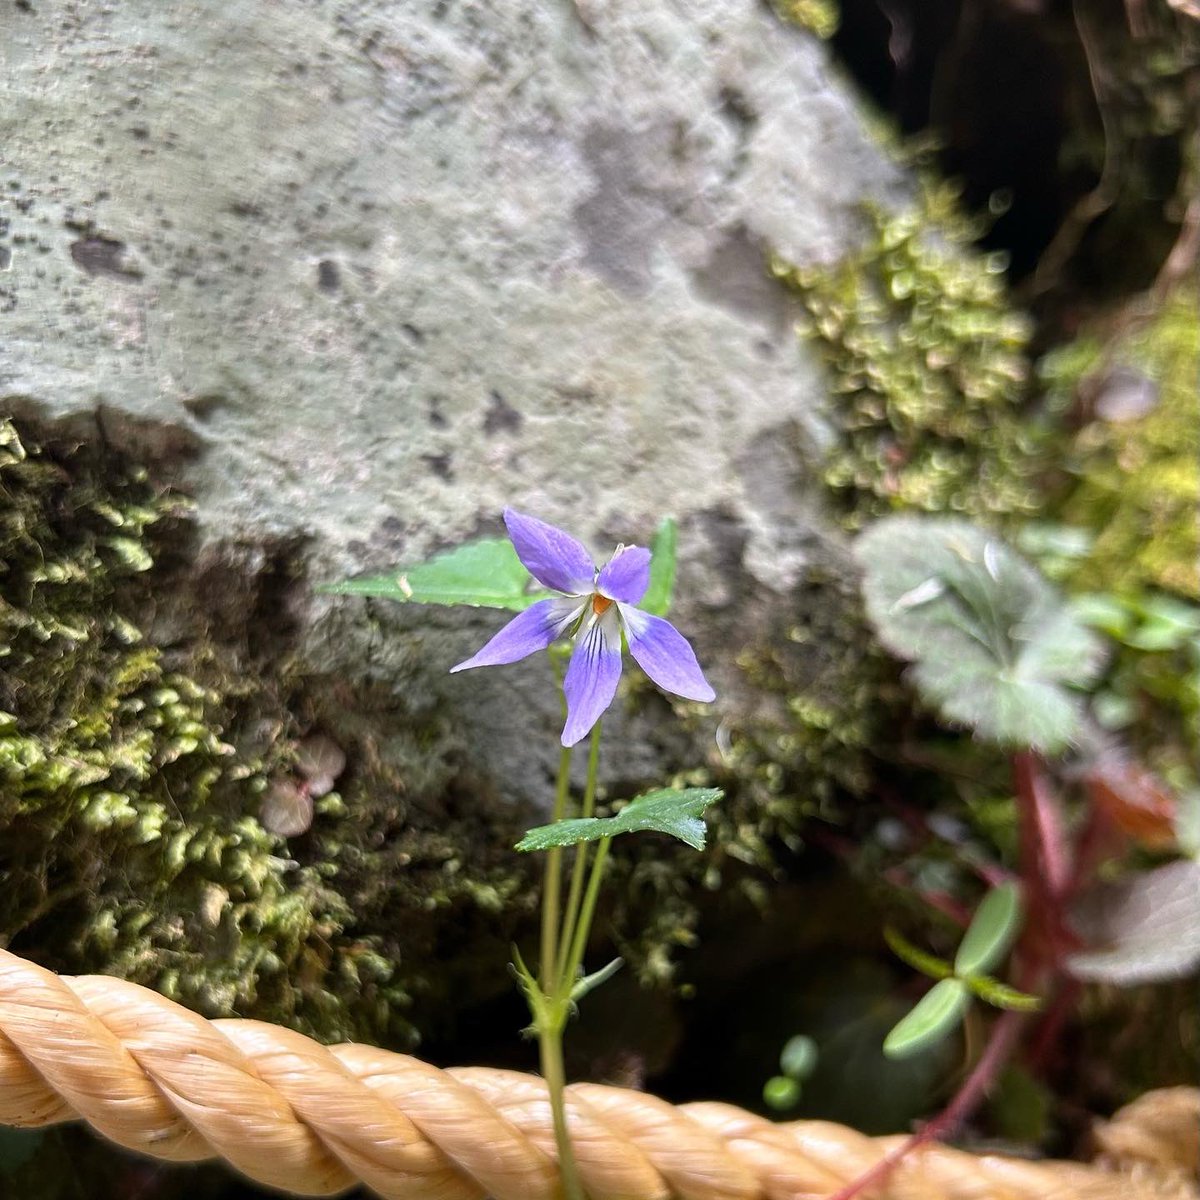 植物の力。
Plant Vital🌿🌸✨
(色調補正なし)

#Plant #green #flower
#kyoto #sacredplace #植物